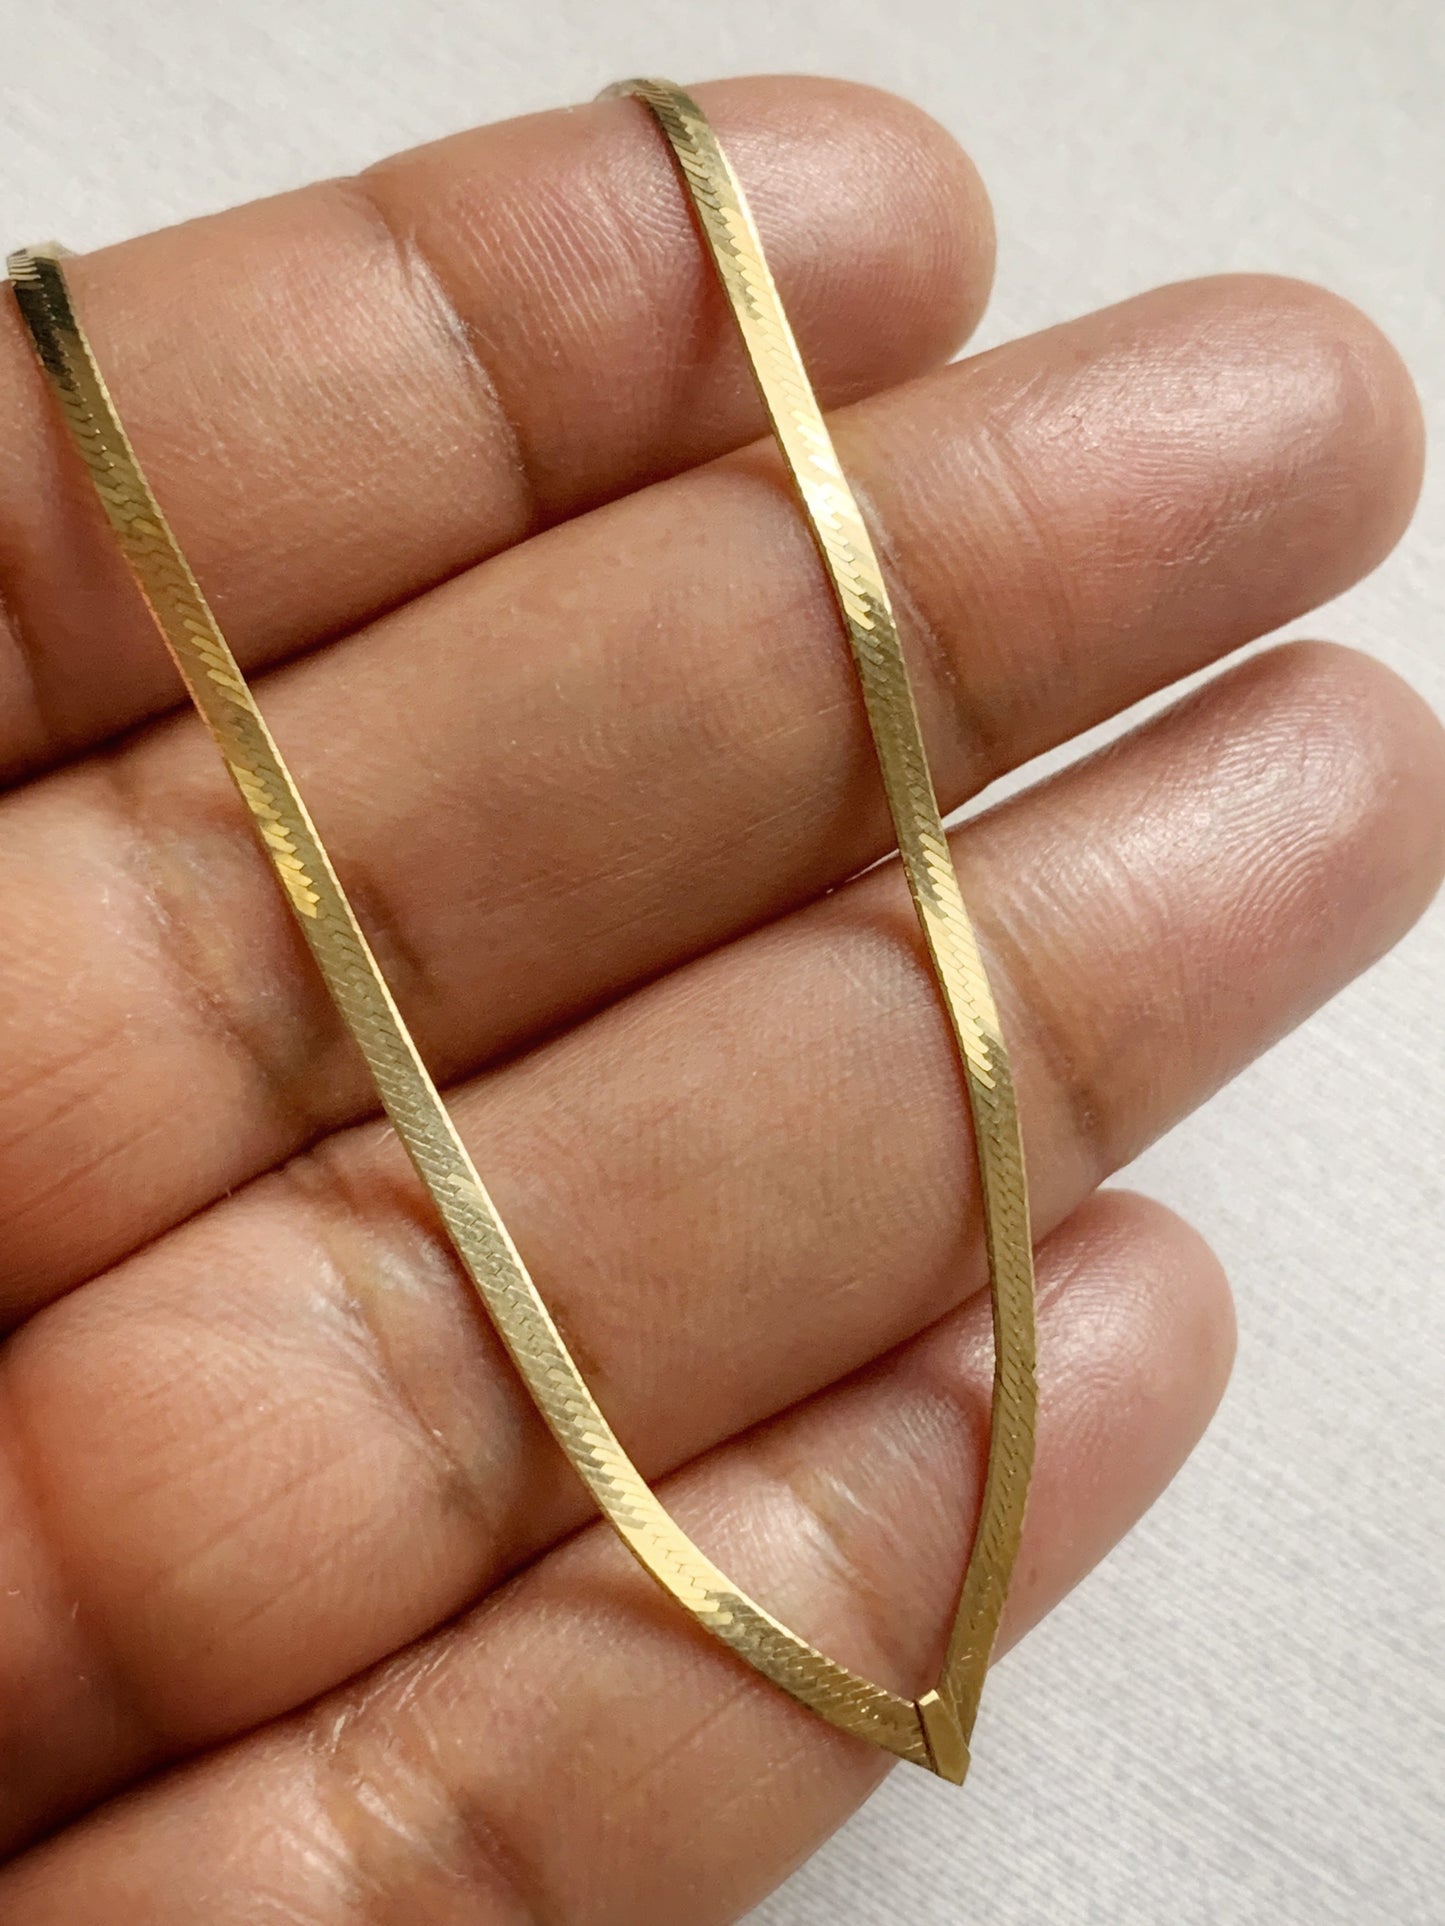 Vintage 9ct Gold Chevron Herringbone Necklace